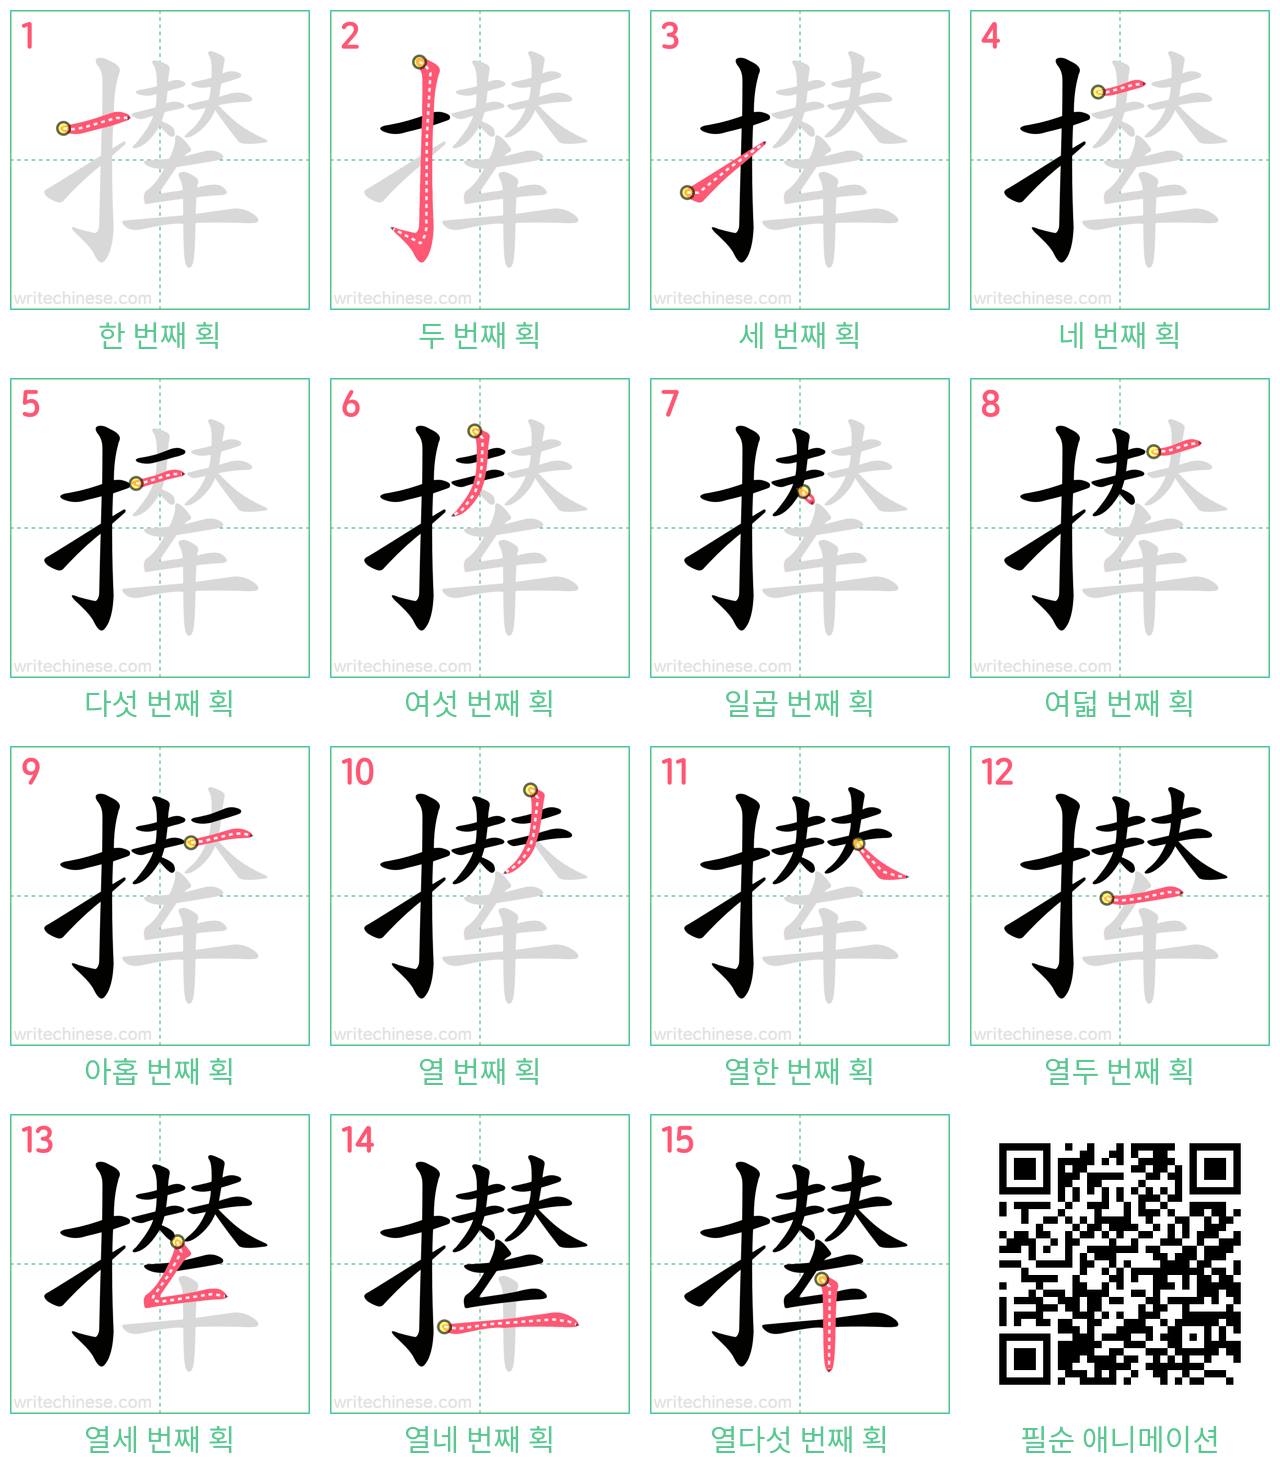 撵 step-by-step stroke order diagrams